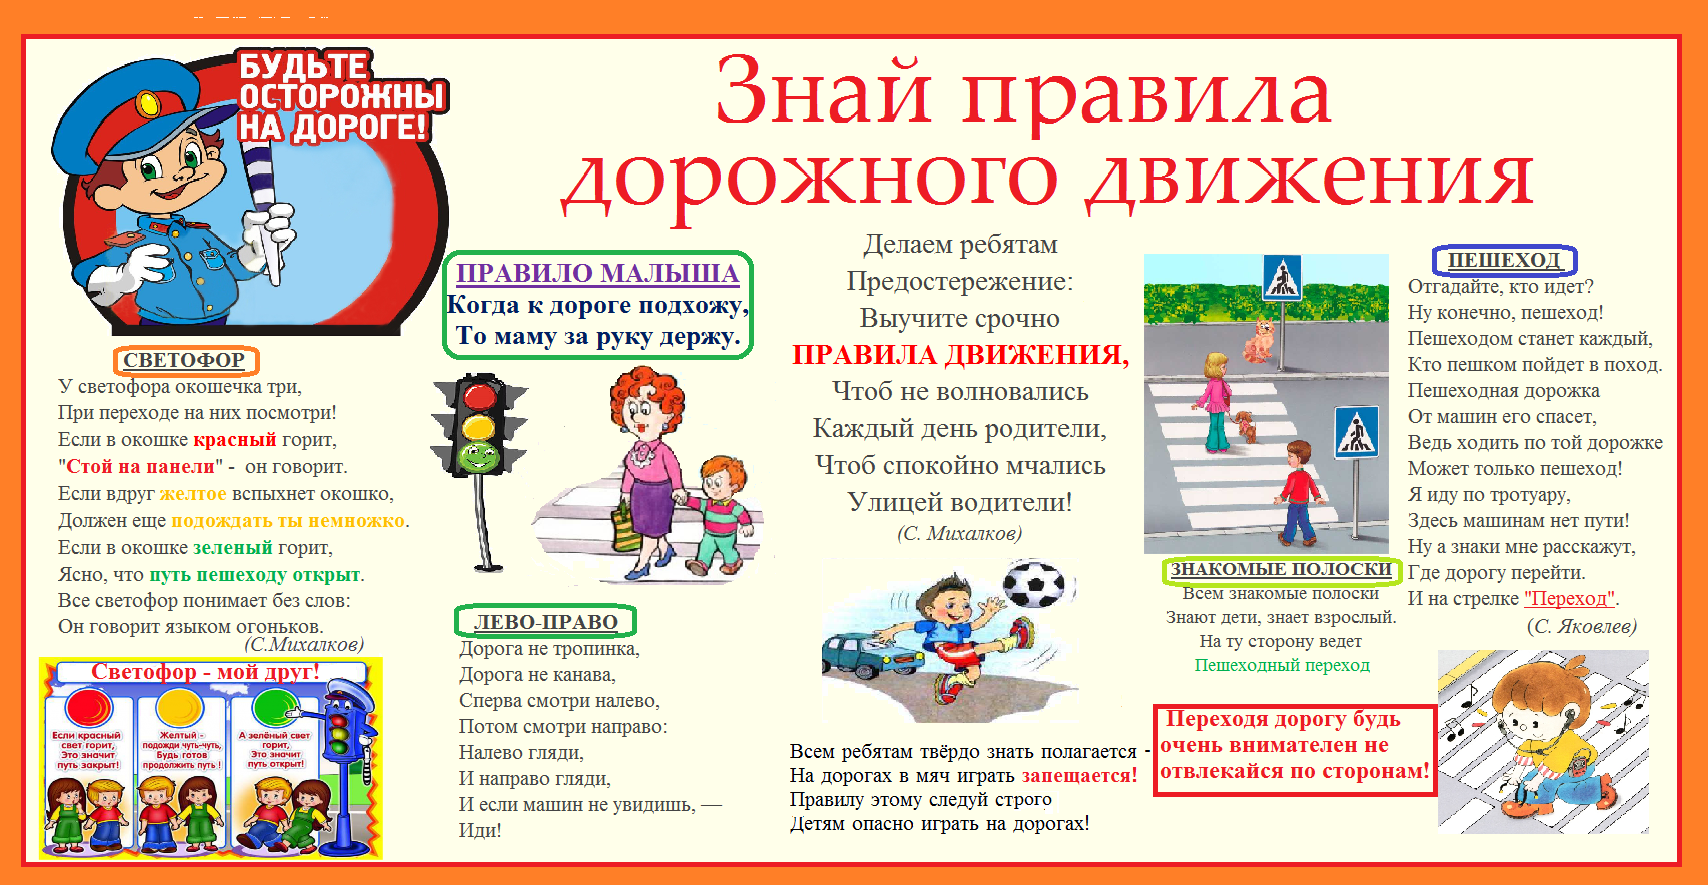 Правила дд. Правила дорожного движения для детей. Плакат по правилам дорожного движения для школьников. Плакат по правилам дорожного движения для детей. ПДД правила дорожного движения.